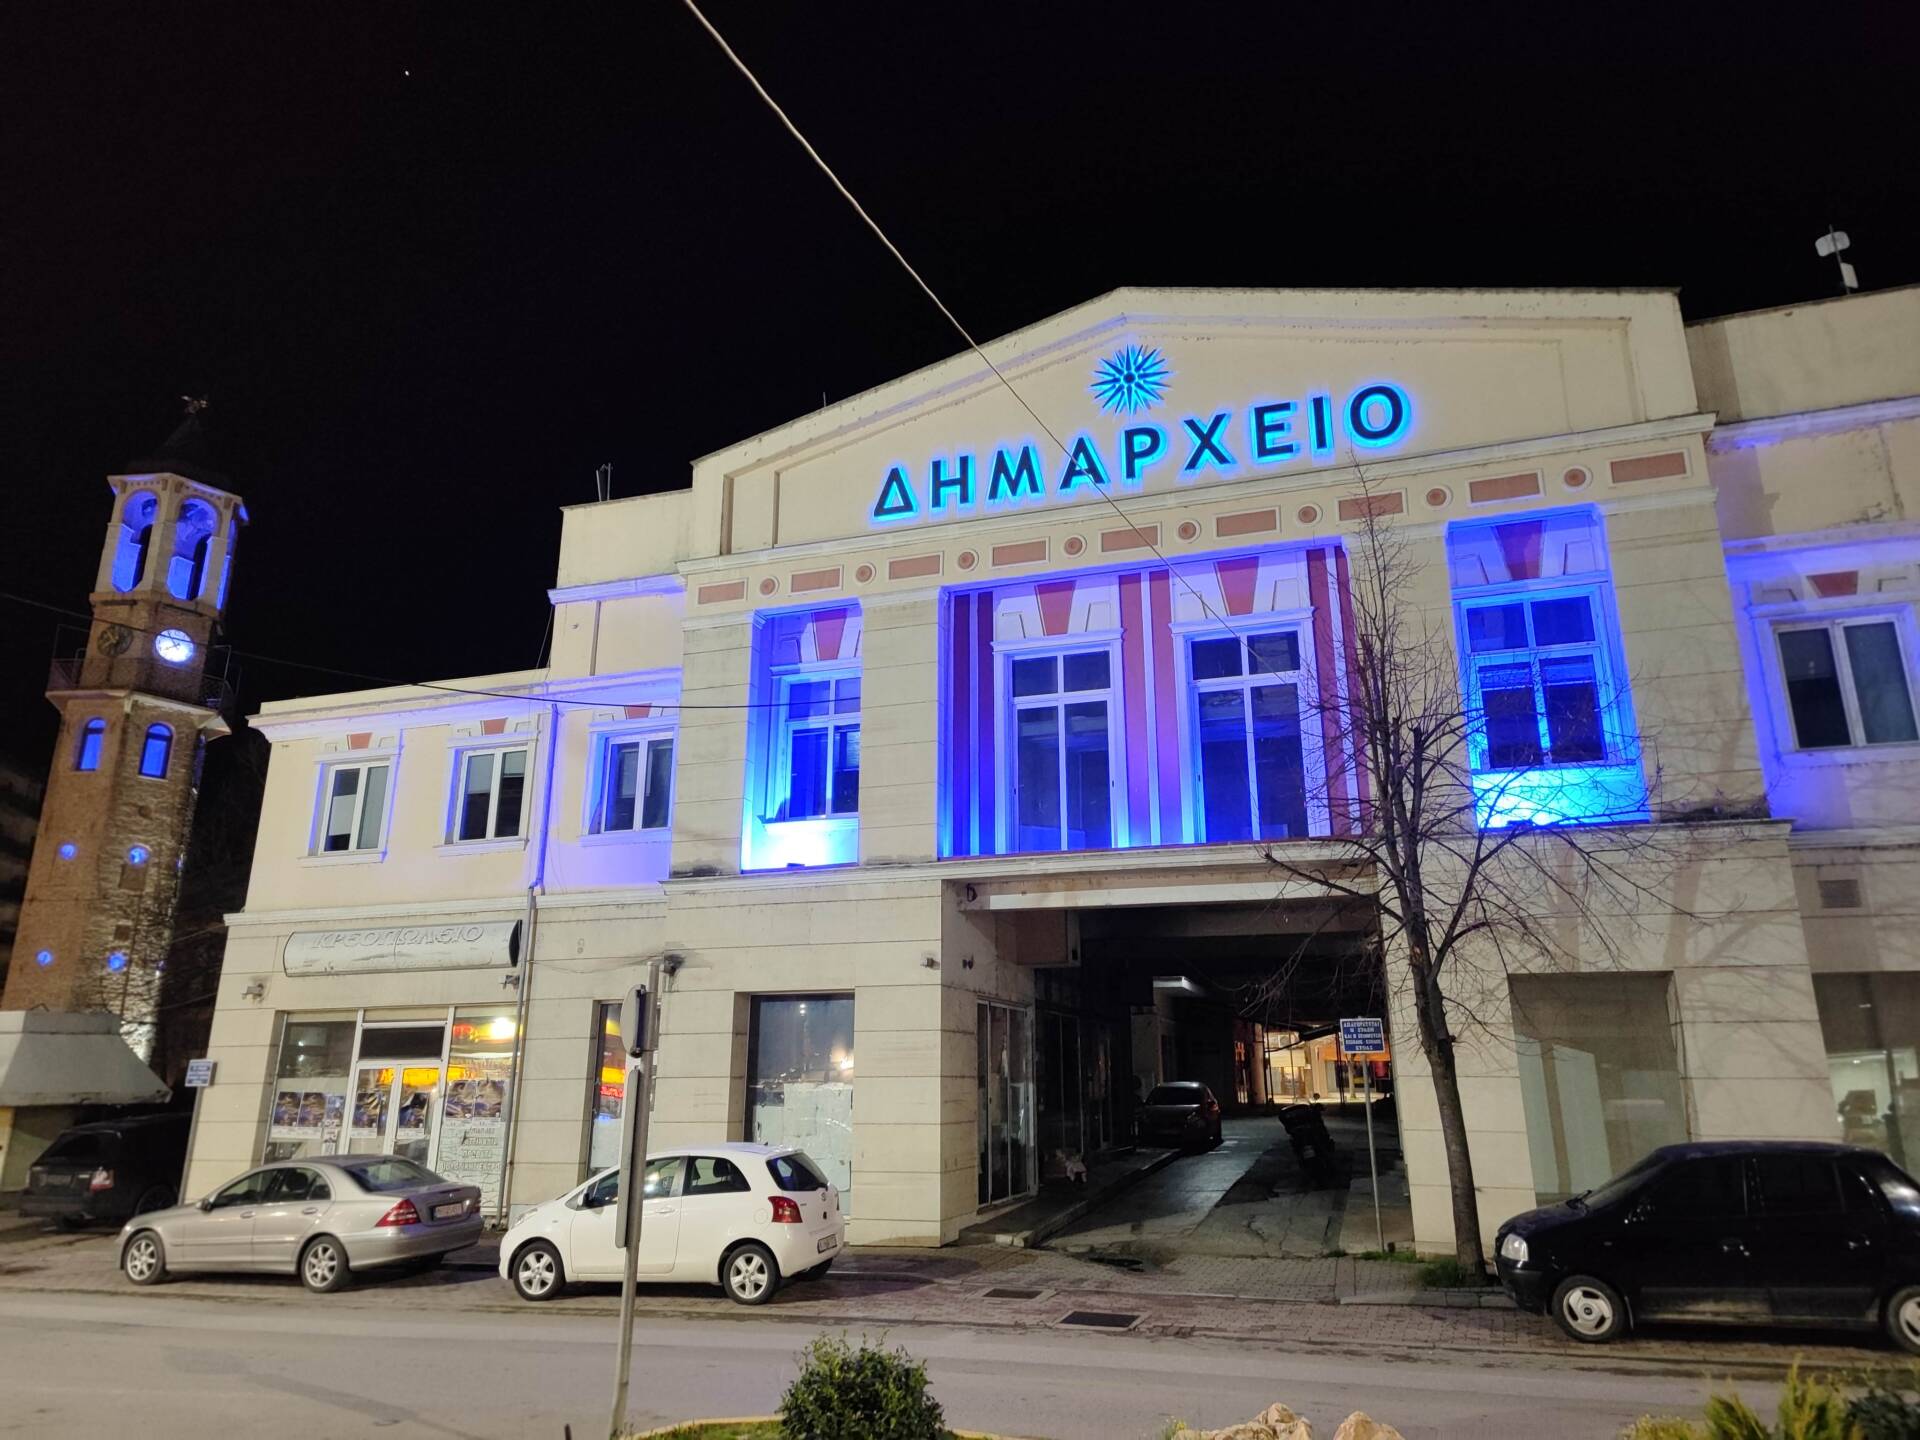 Δήμος Γρεβενών: Στα «μπλε της Ελλάδας» το Δημαρχείο και το Ρολόι της πόλης για το «Χρυσό μας παιδί» Μίλτο Τεντόγλου